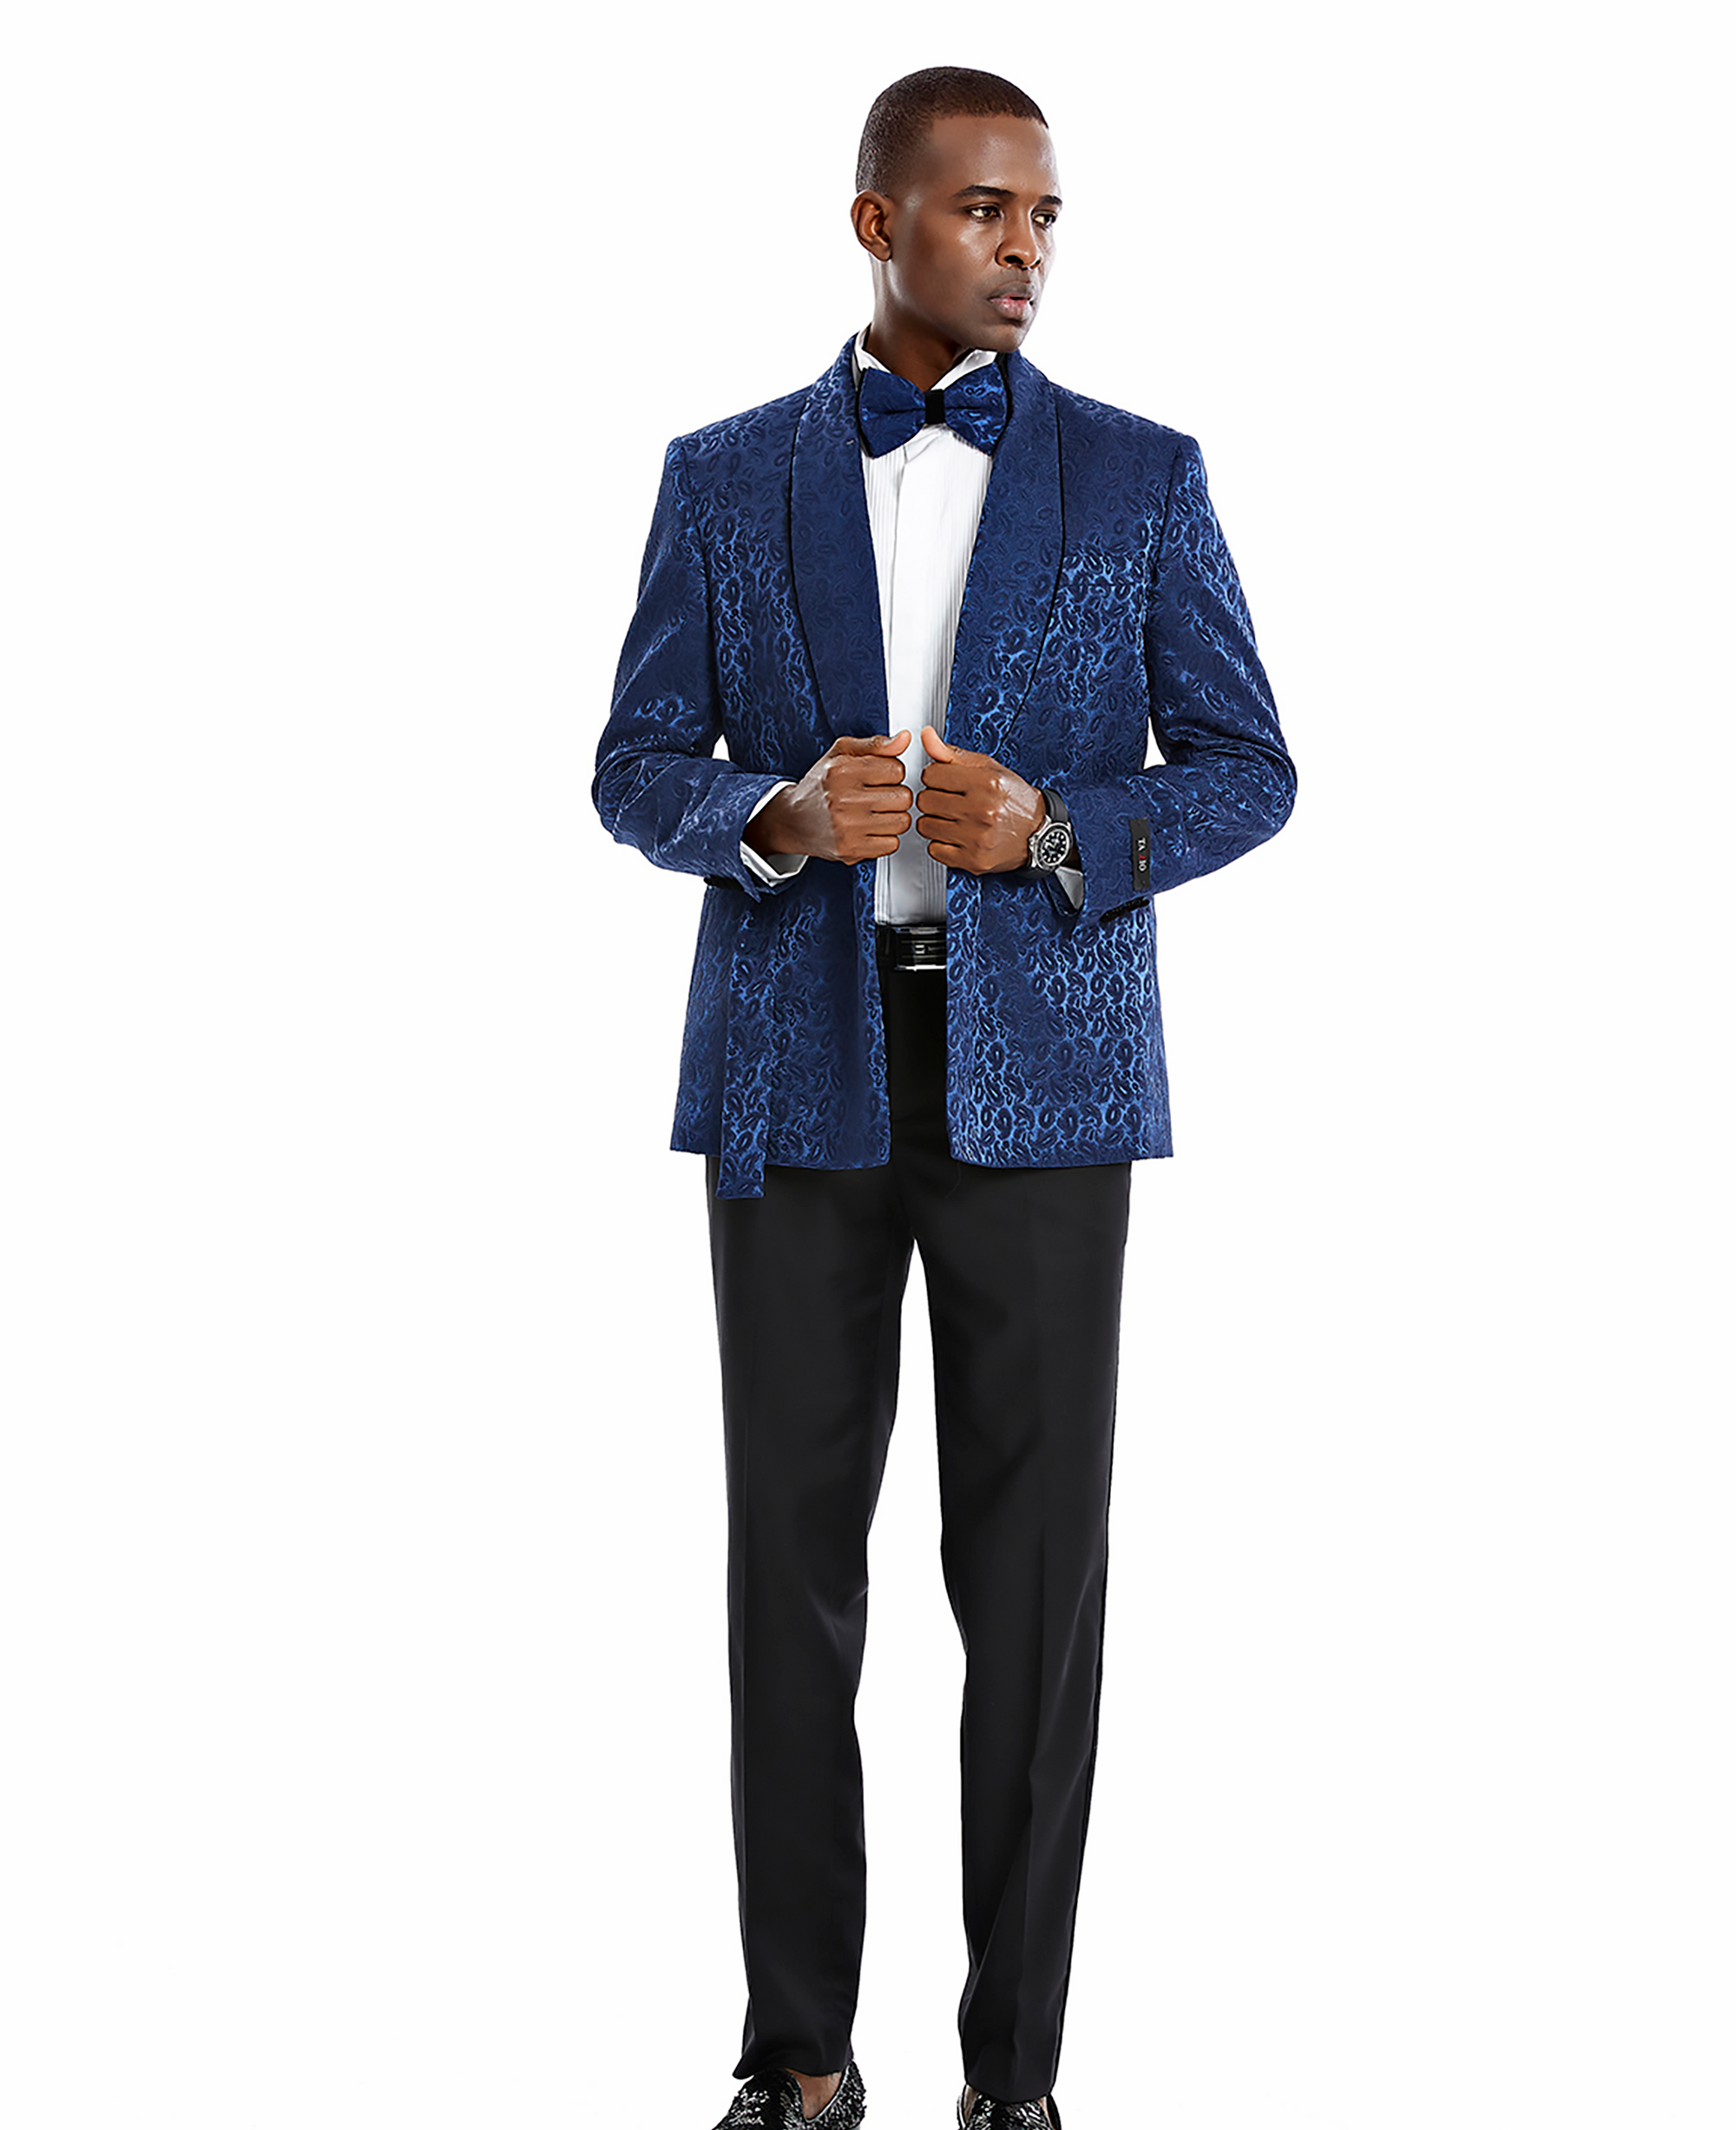 Men's Blue/Black Paisley Shawl Collar Suit